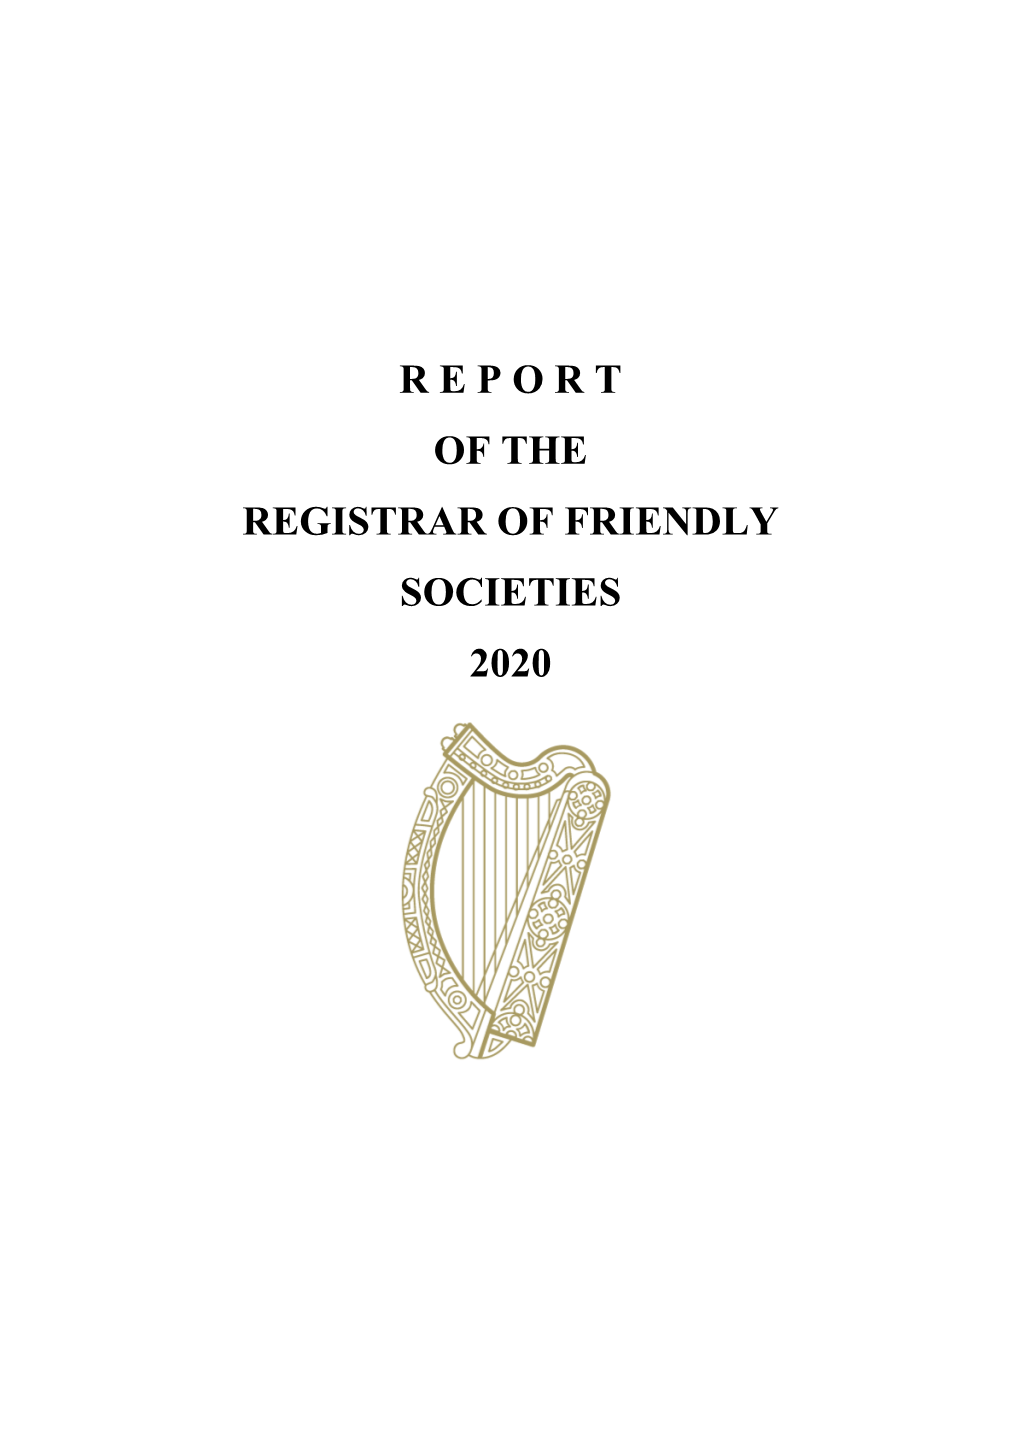 R E P O R T of the Registrar of Friendly Societies 2020